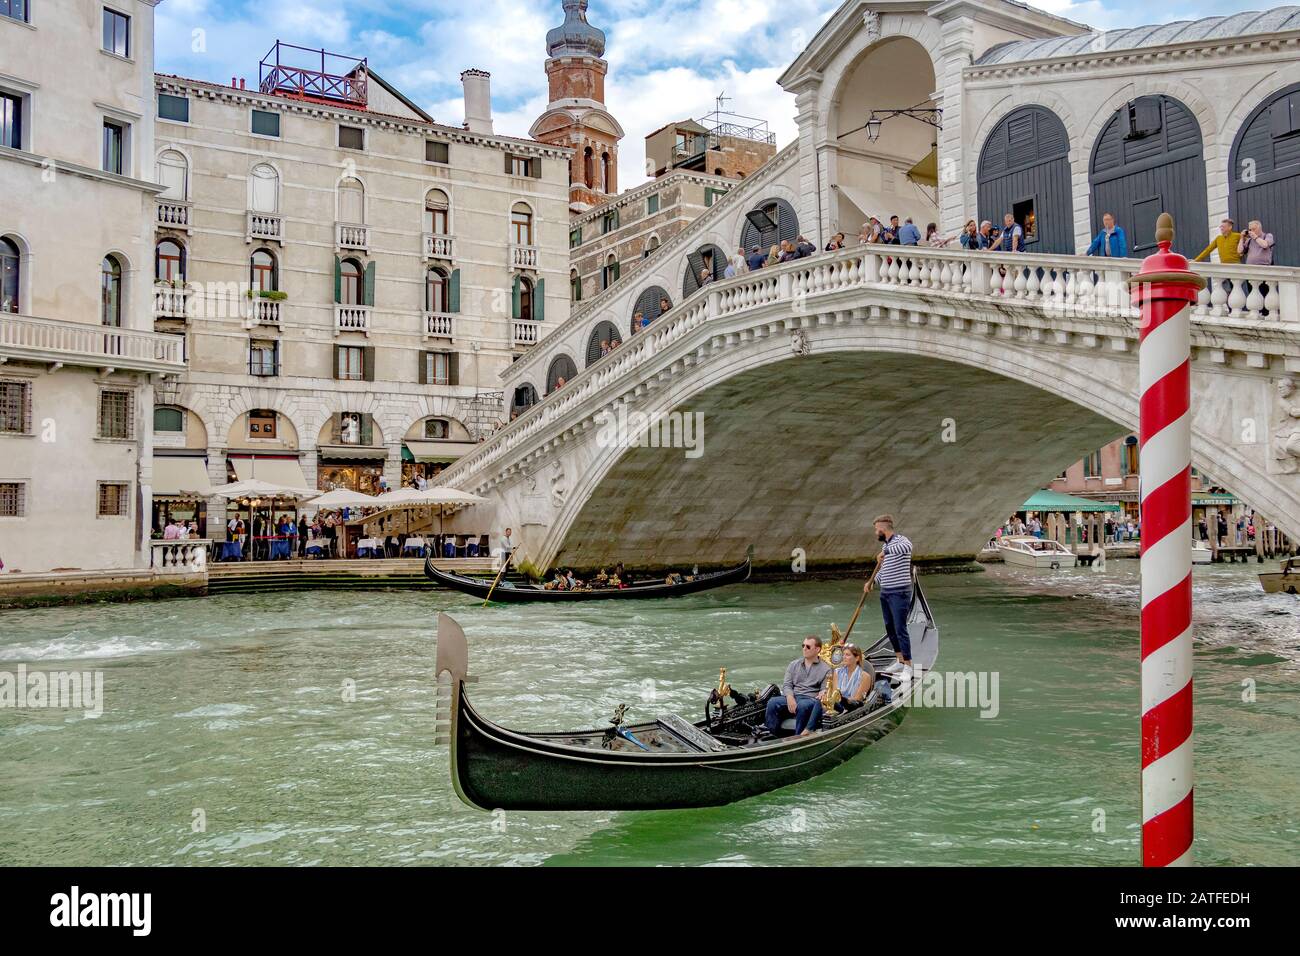 Une télécabine avec deux personnes prenant une télécabine en face du pont du Rialto, le plus ancien des quatre ponts traversant le Grand Canal à Venise, en Italie Banque D'Images